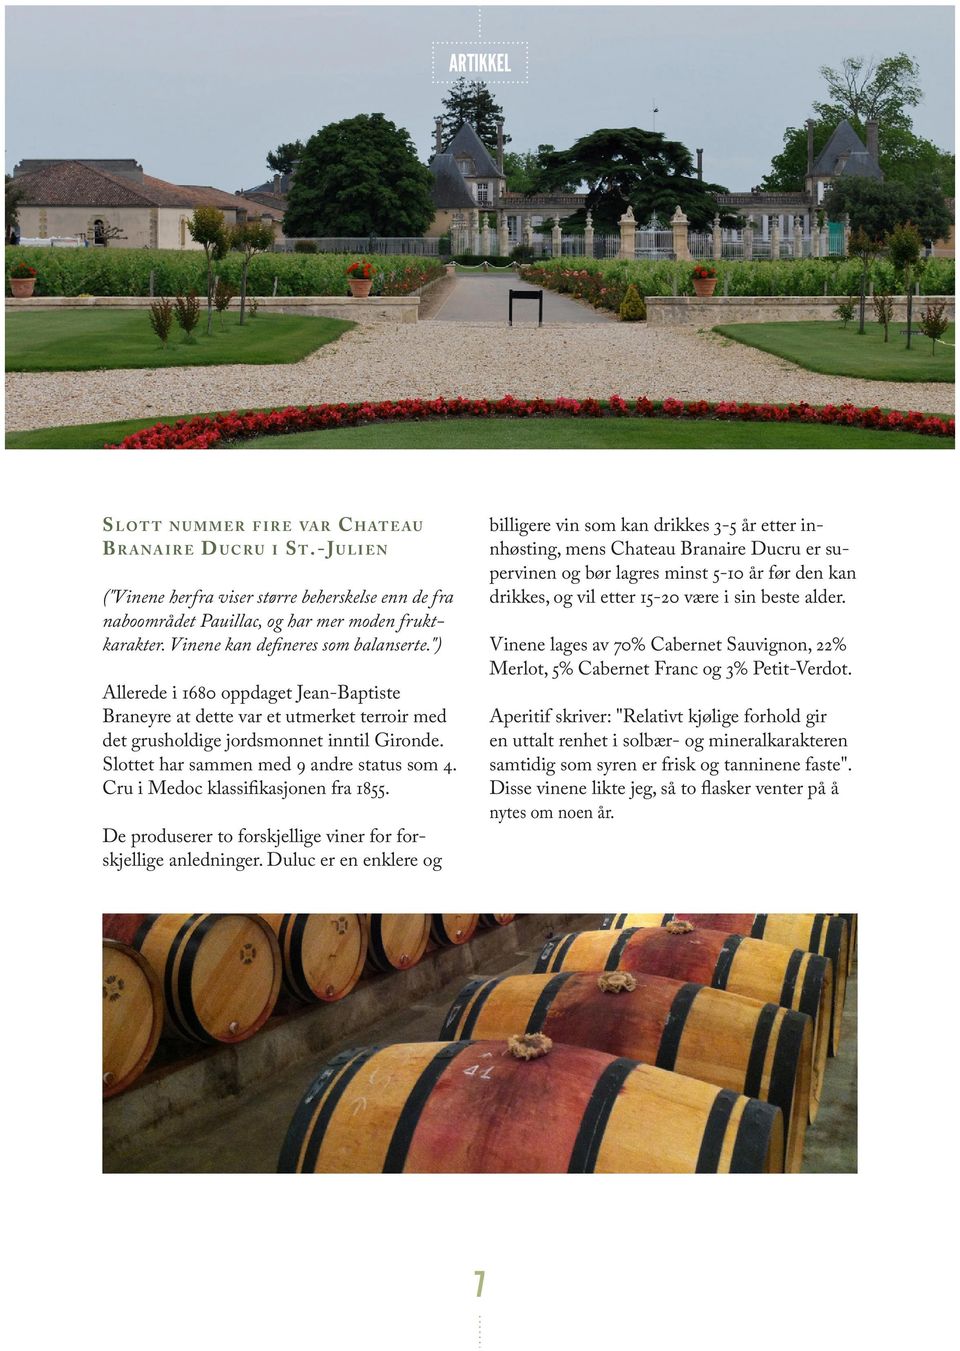 Slottet har sammen med 9 andre status som 4. Cru i Medoc klassifikasjonen fra 1855. De produserer to forskjellige viner for forskjellige anledninger.